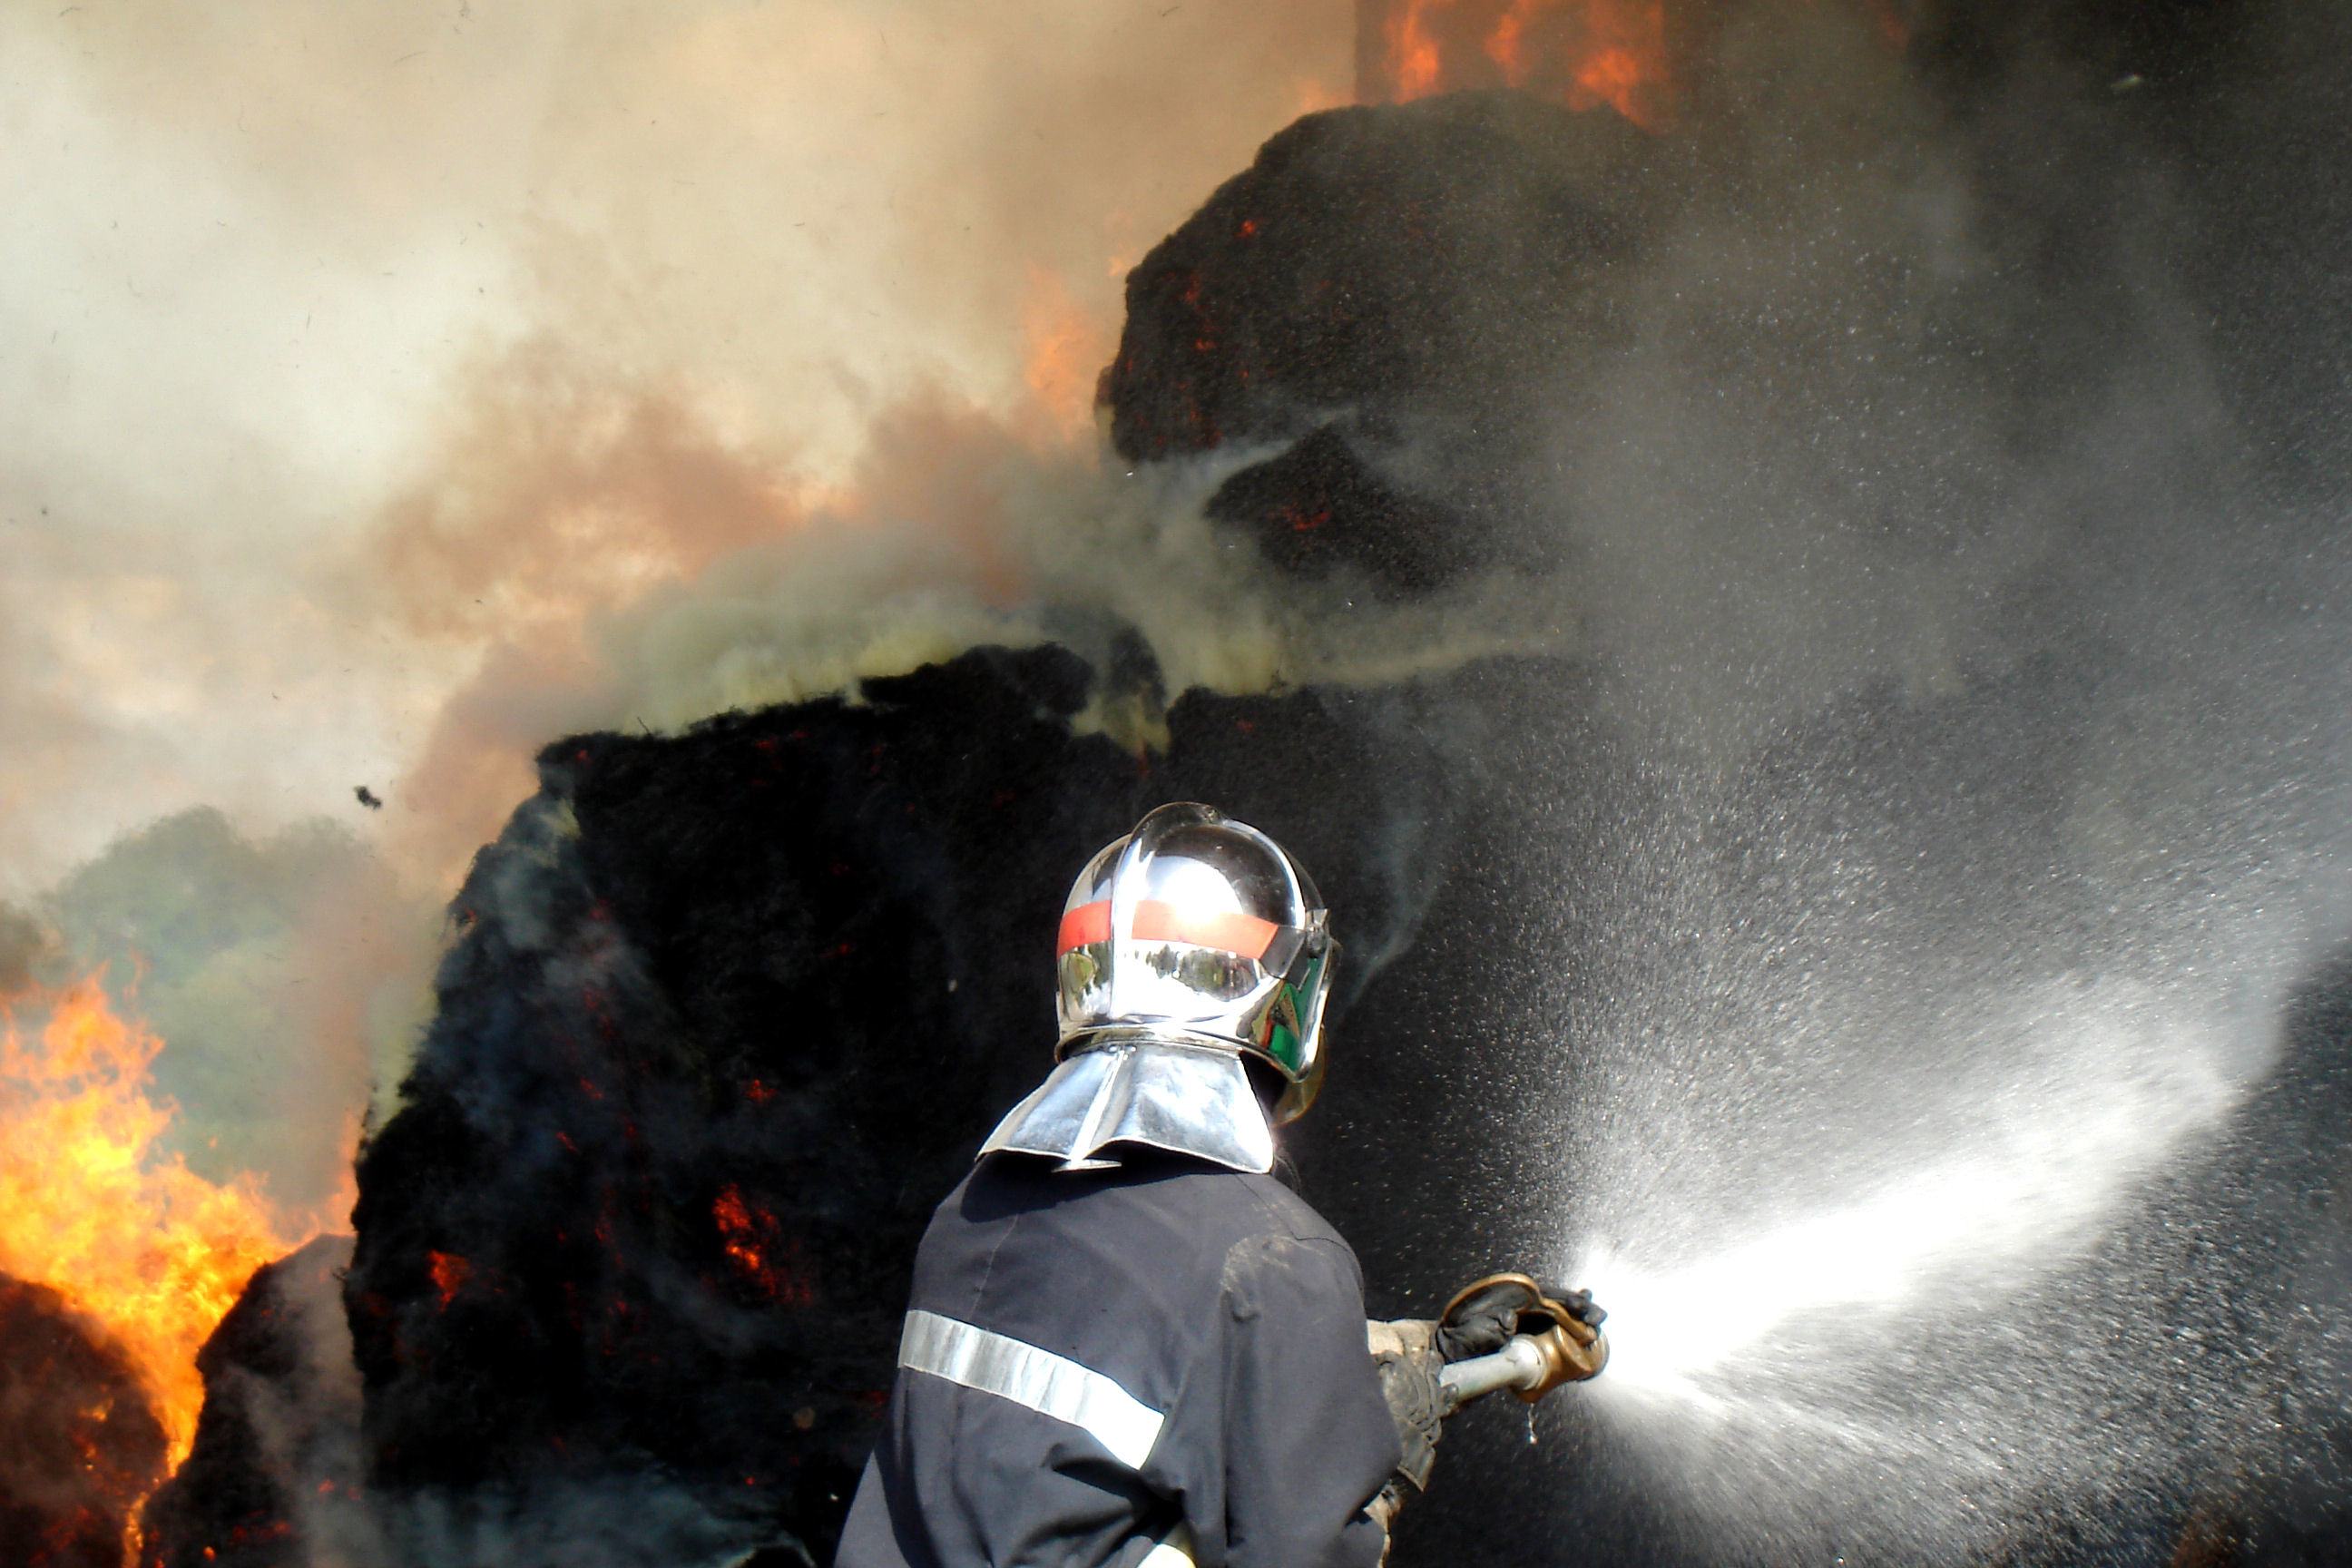 Vingt sapeurs-pompiers ont été engagés pour combattre l'incendie - Illustration © Adobe Stock